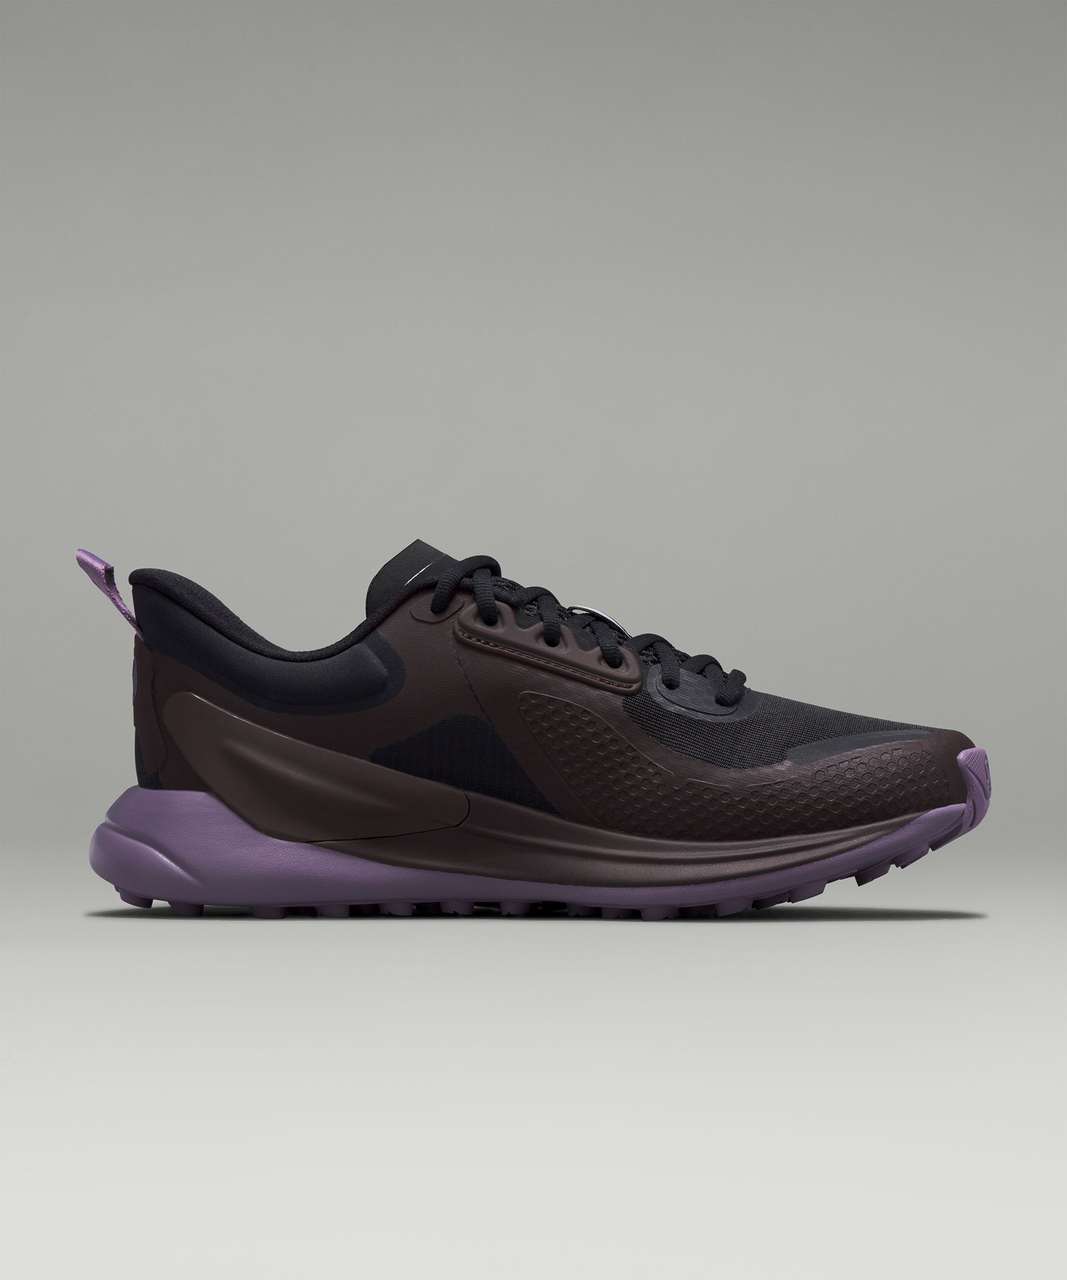 Lululemon Blissfeel Trail Womens Running Shoe - Black / Espresso / Purple Ash